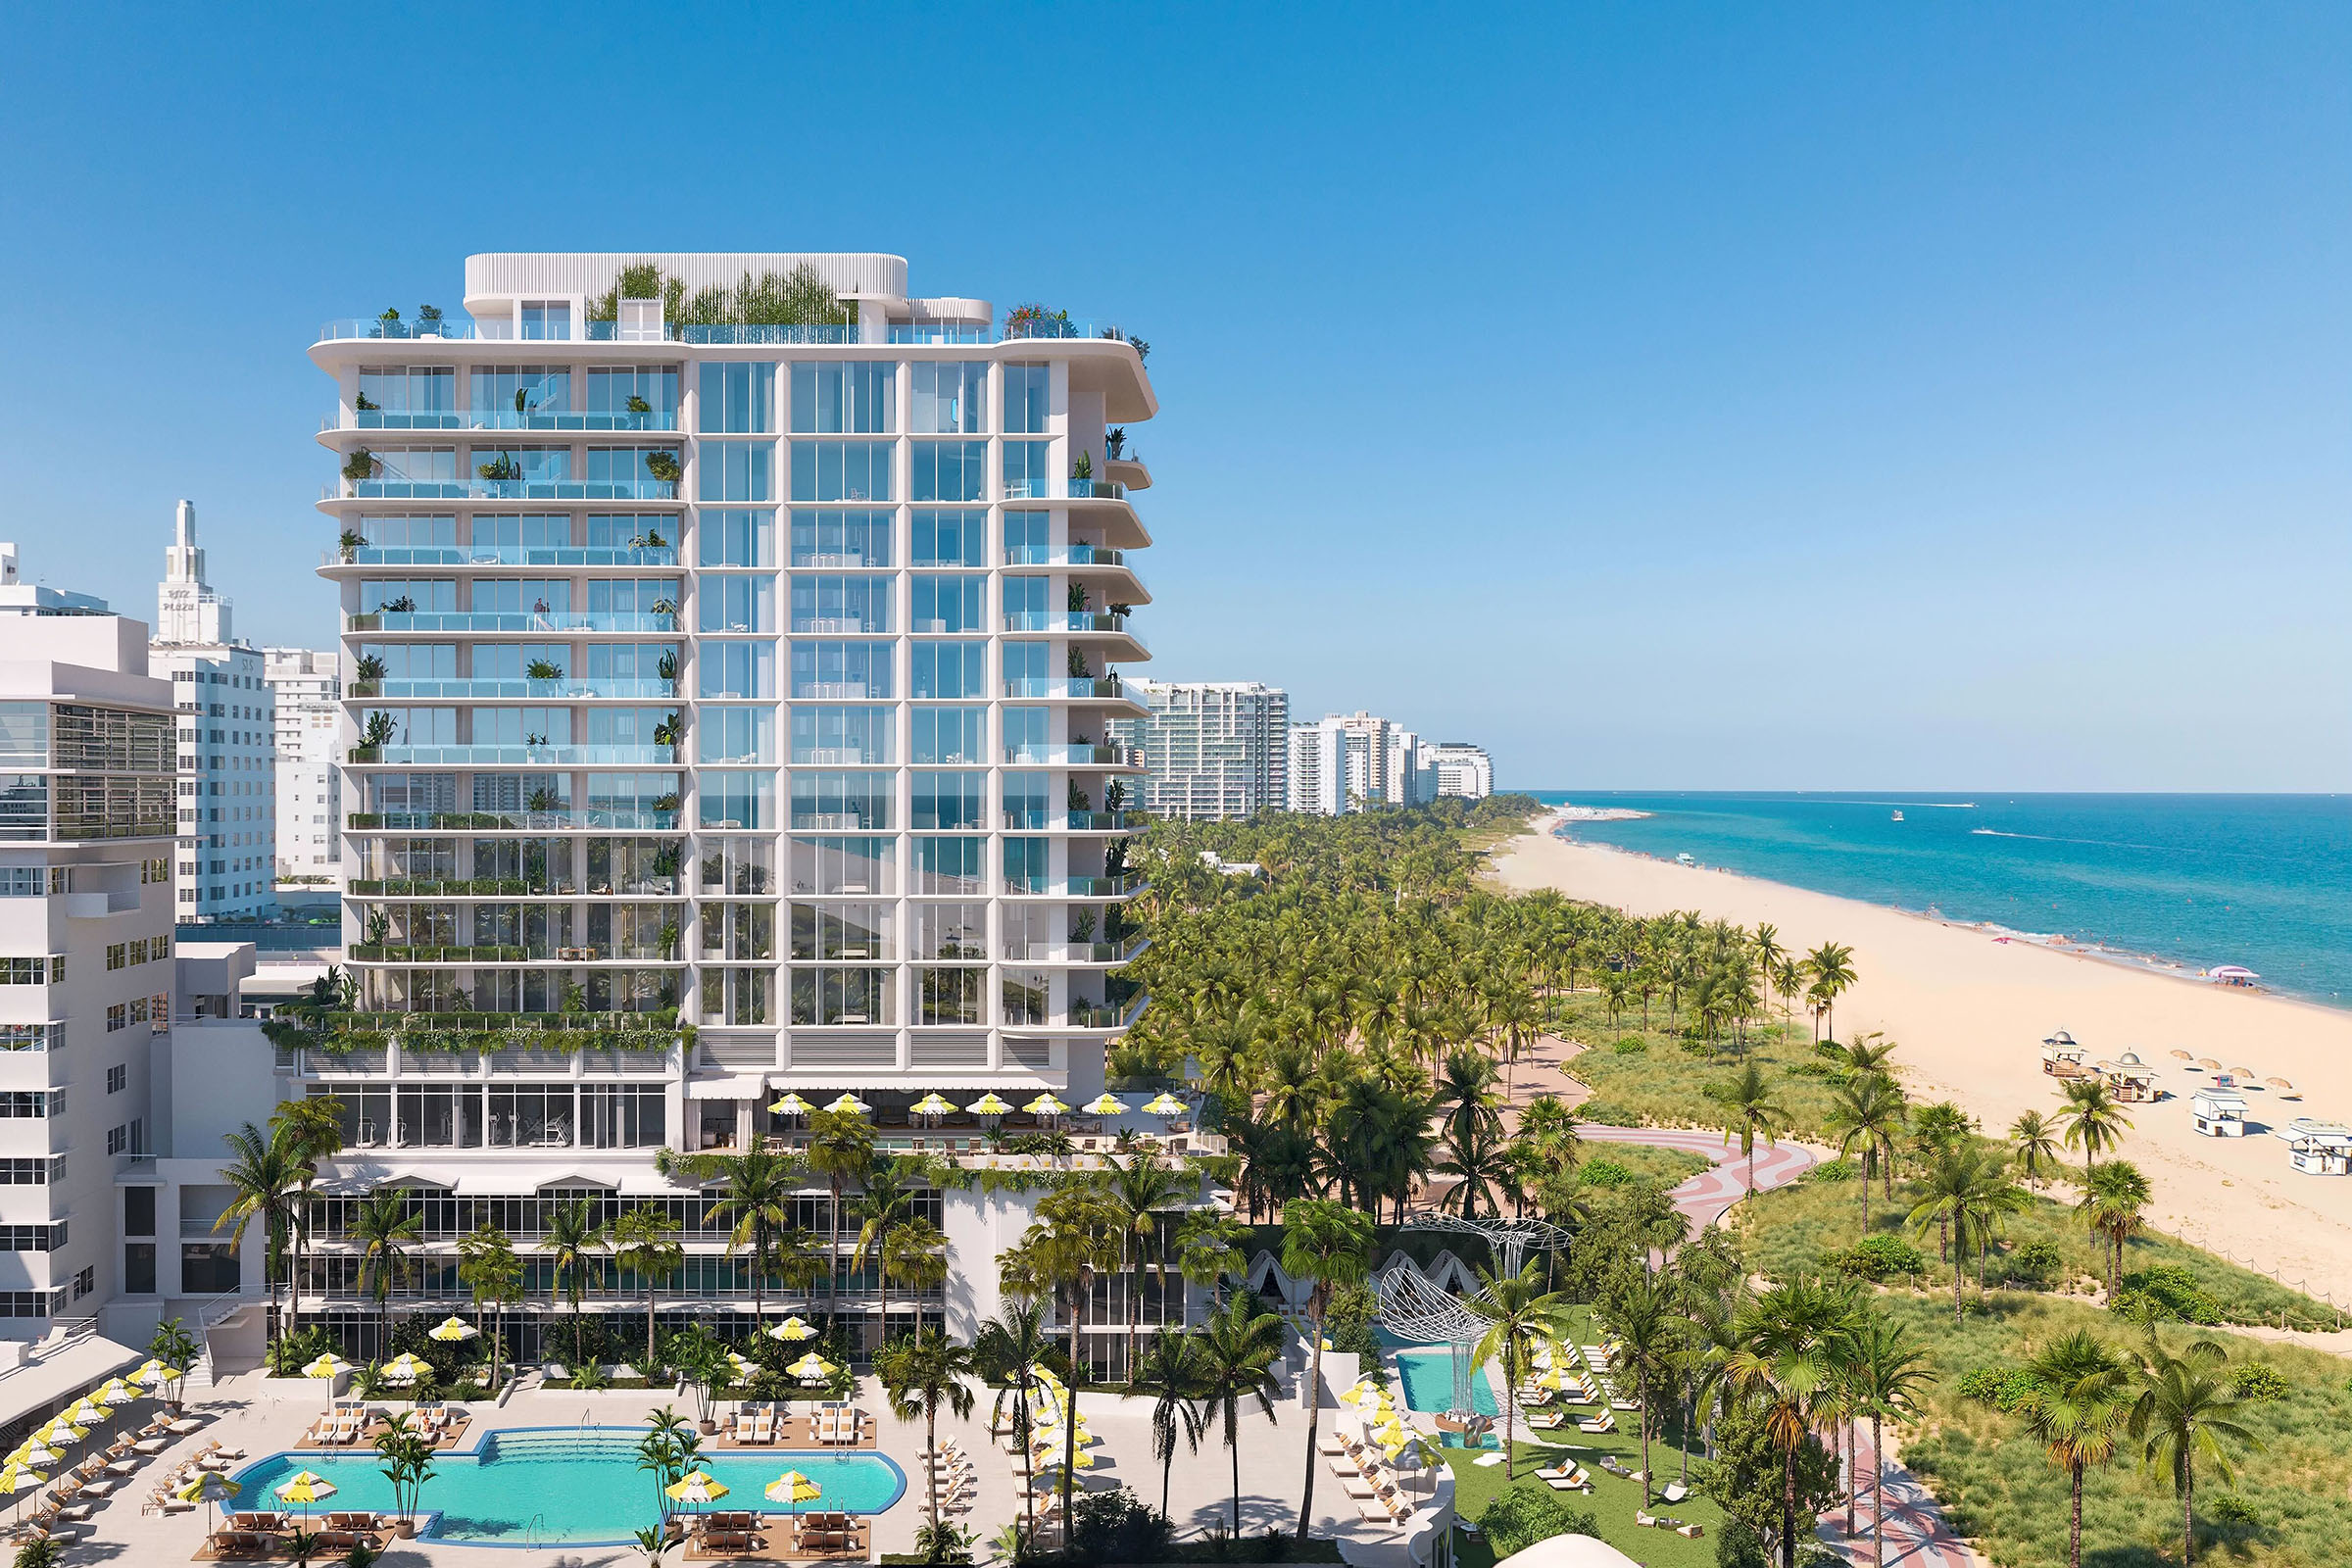 Ritz Carlton/Sagamore Miami Beach